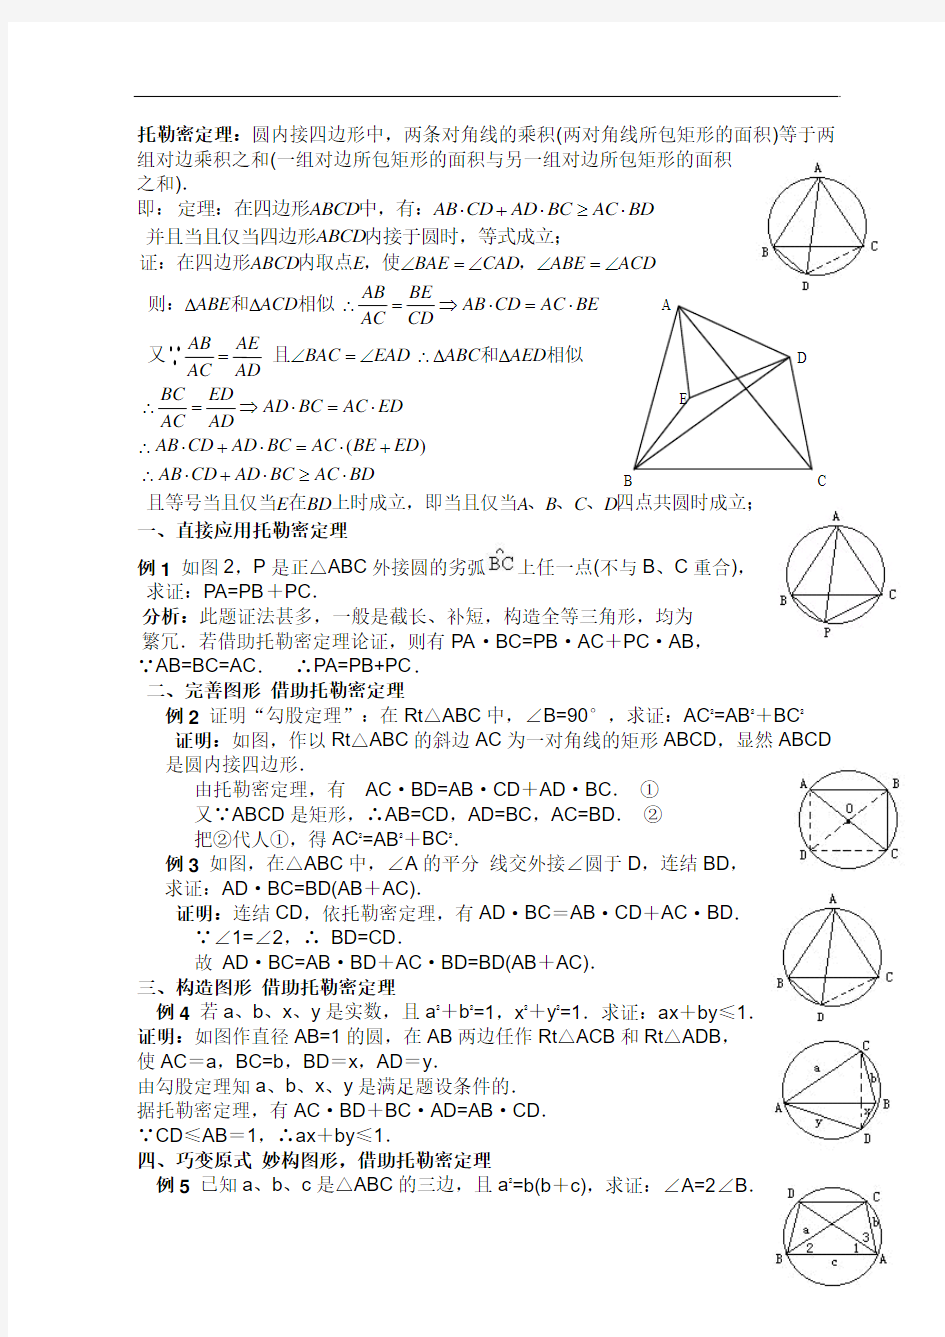 高中数学竞赛 平面几何的几个重要定理——托勒密定理